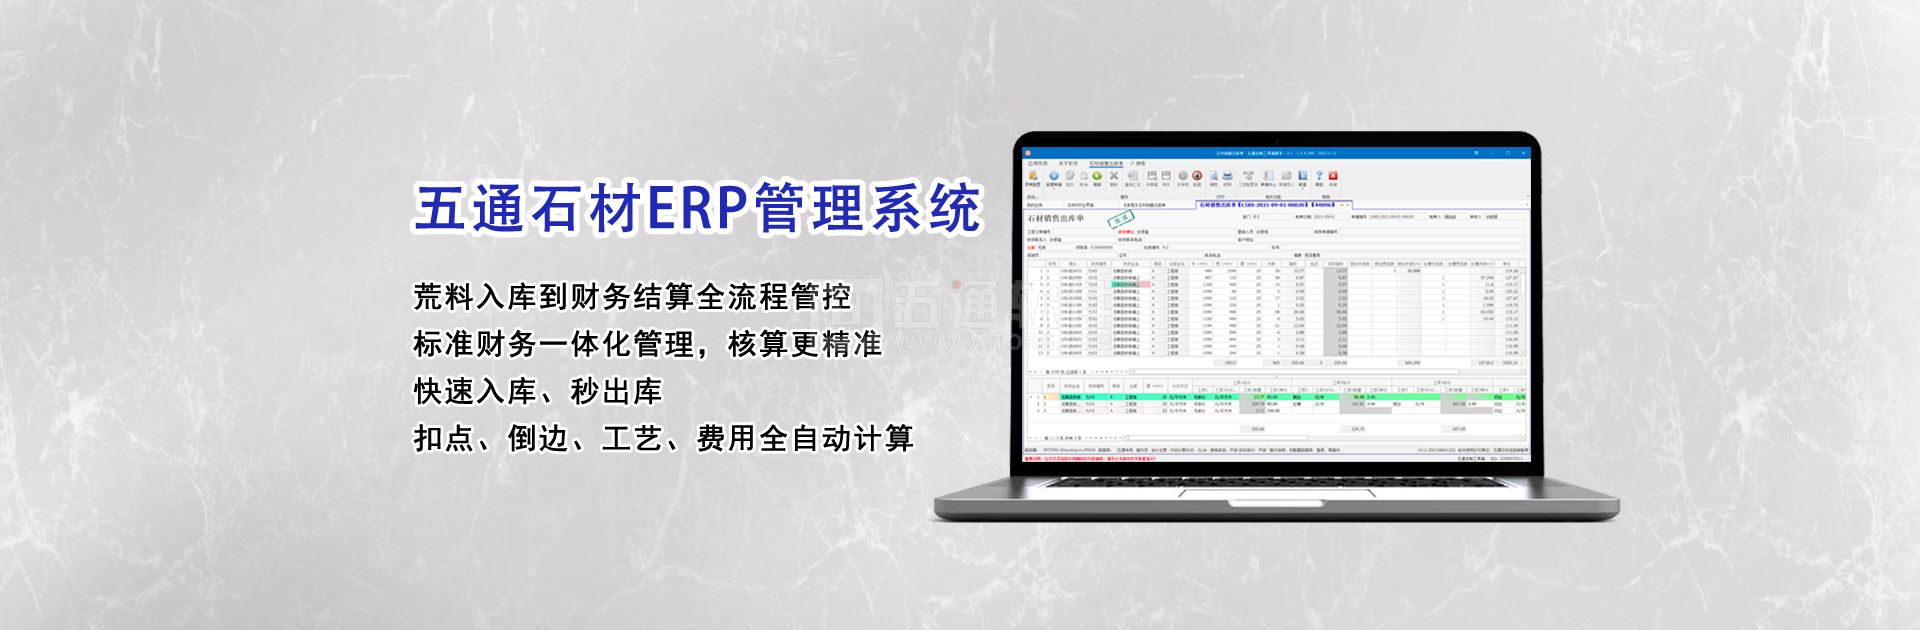 五通石材ERP管理系統集團版